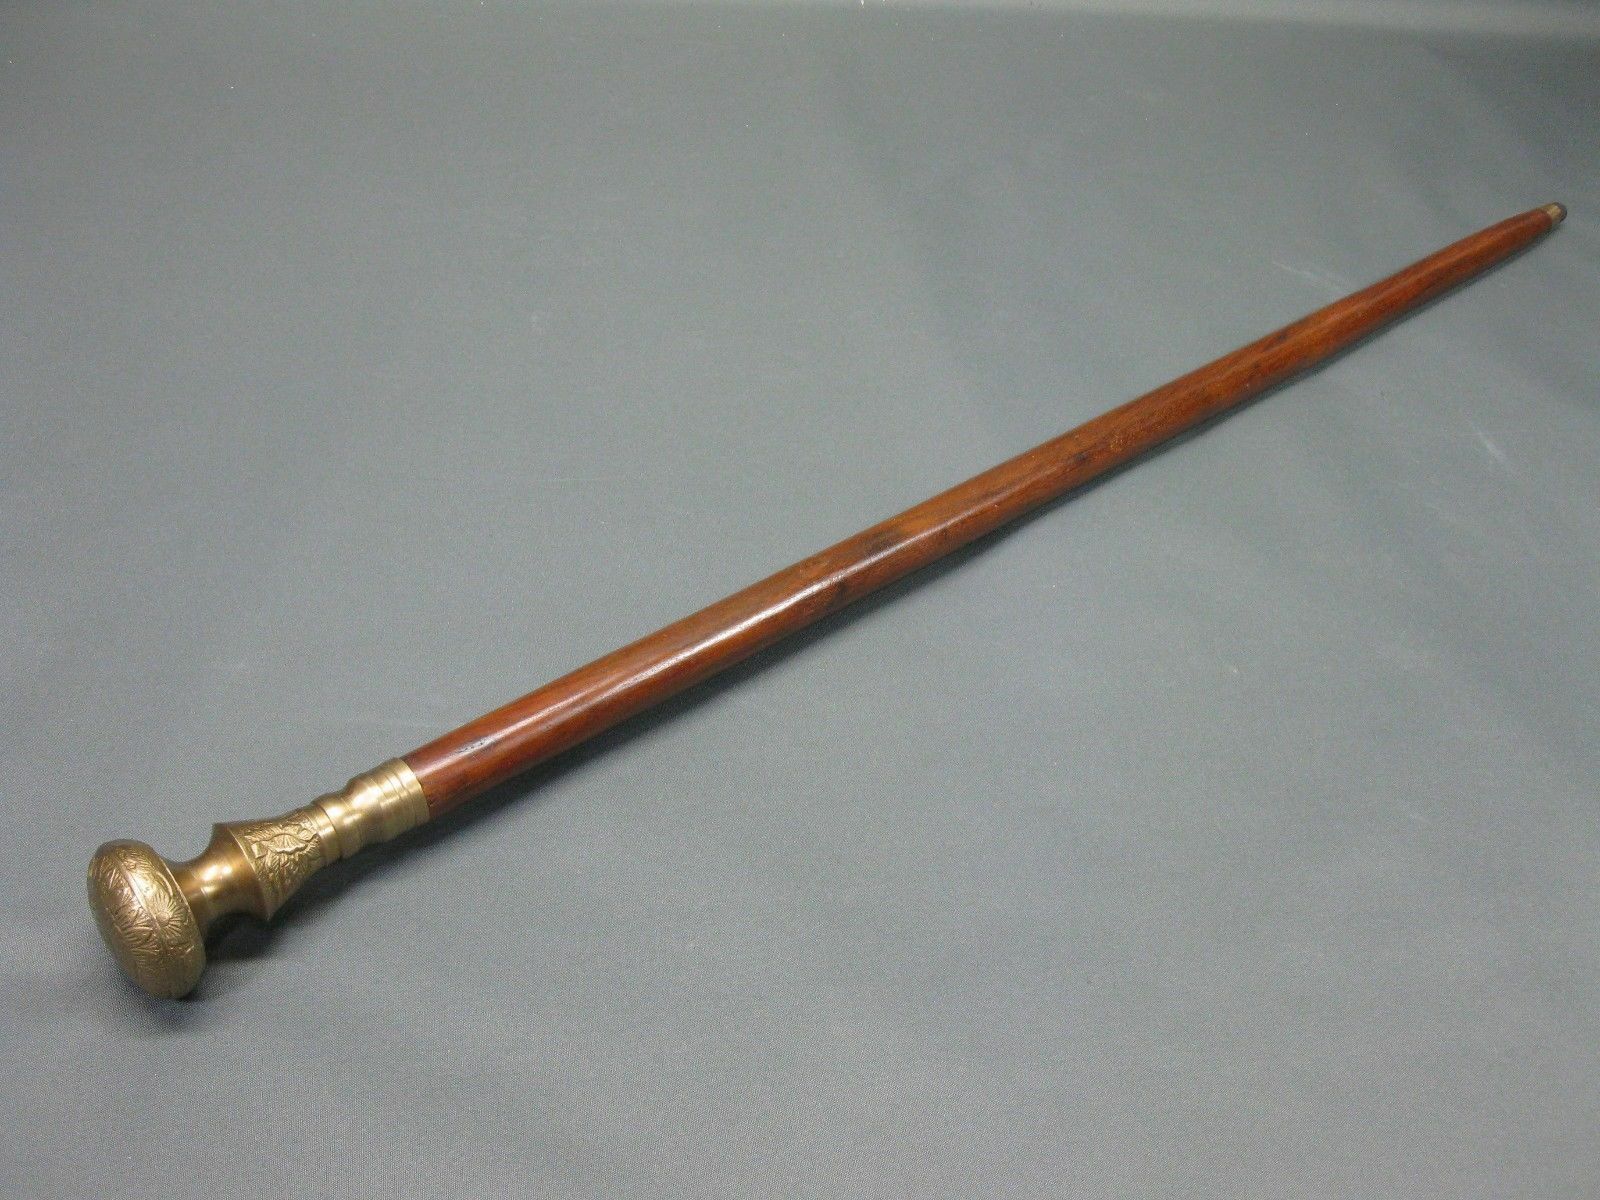 New Solid Antique Solid Brass Handle Wooden Walking Stick Cane Vintage Designer